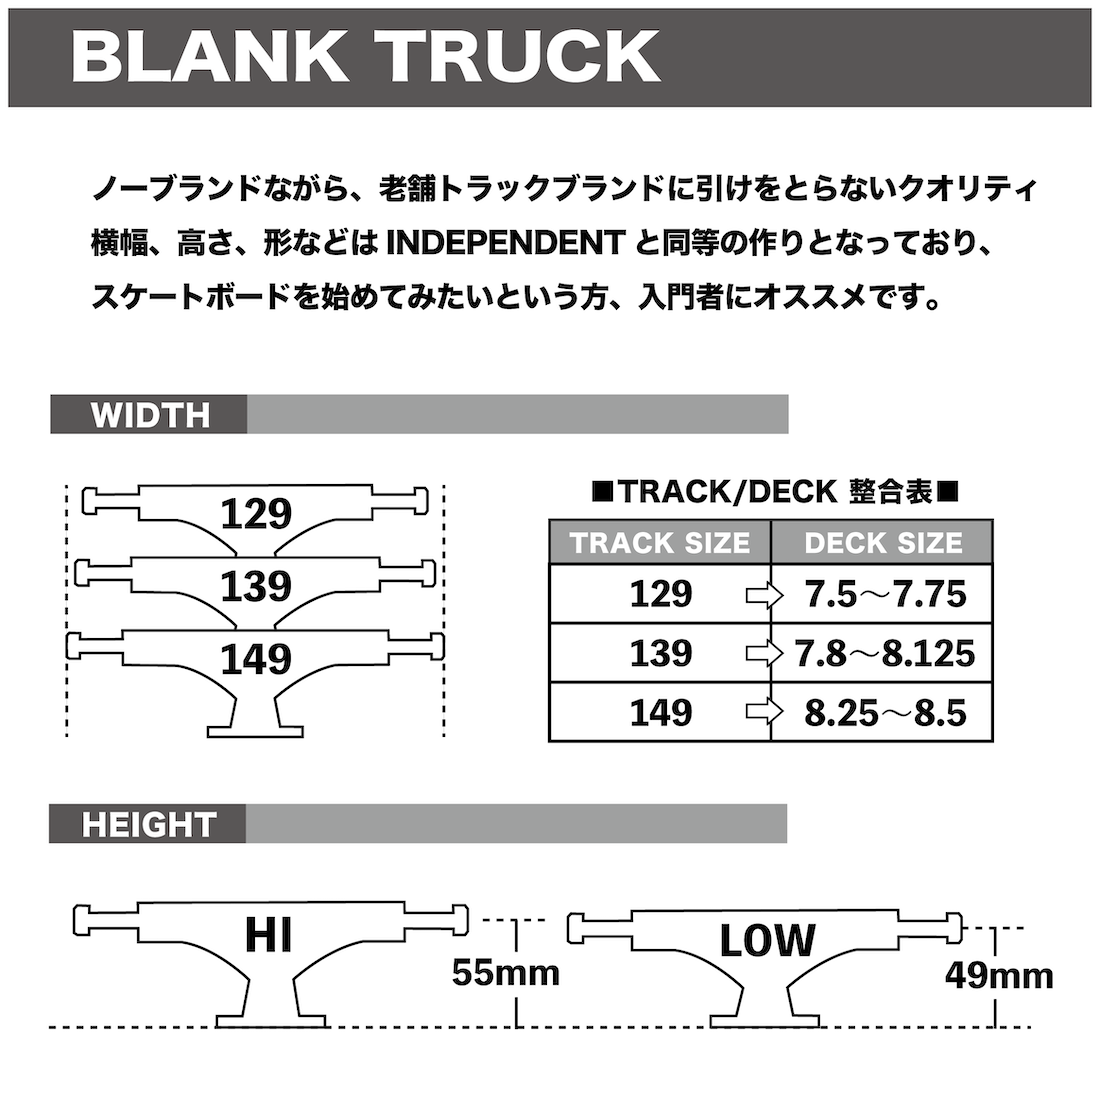 【Blank Truck】 Standard -149